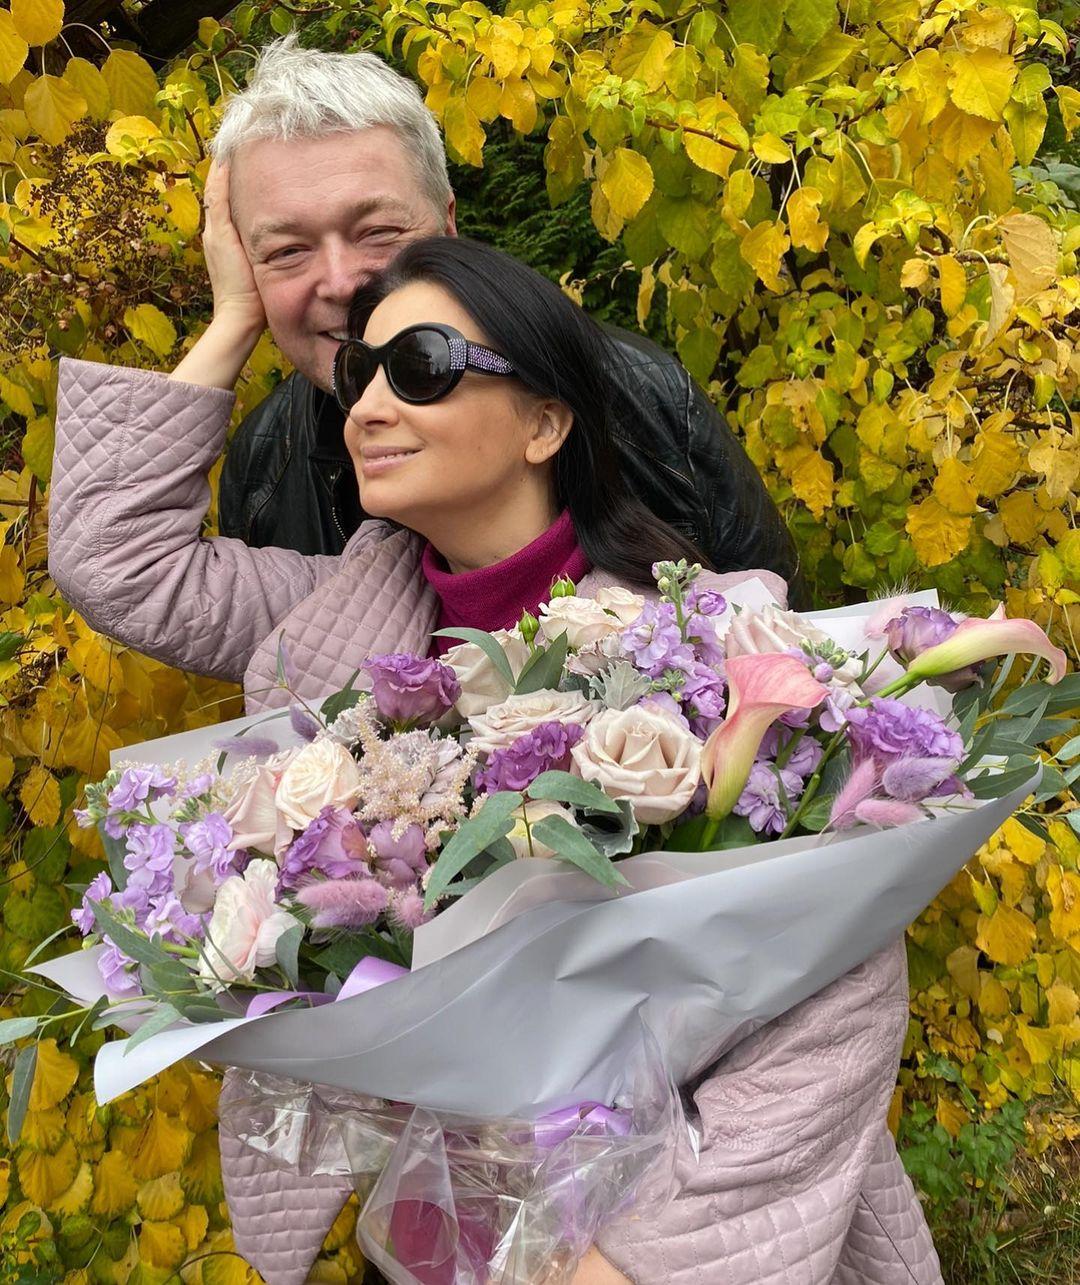 Екатерина Стриженова с мужем